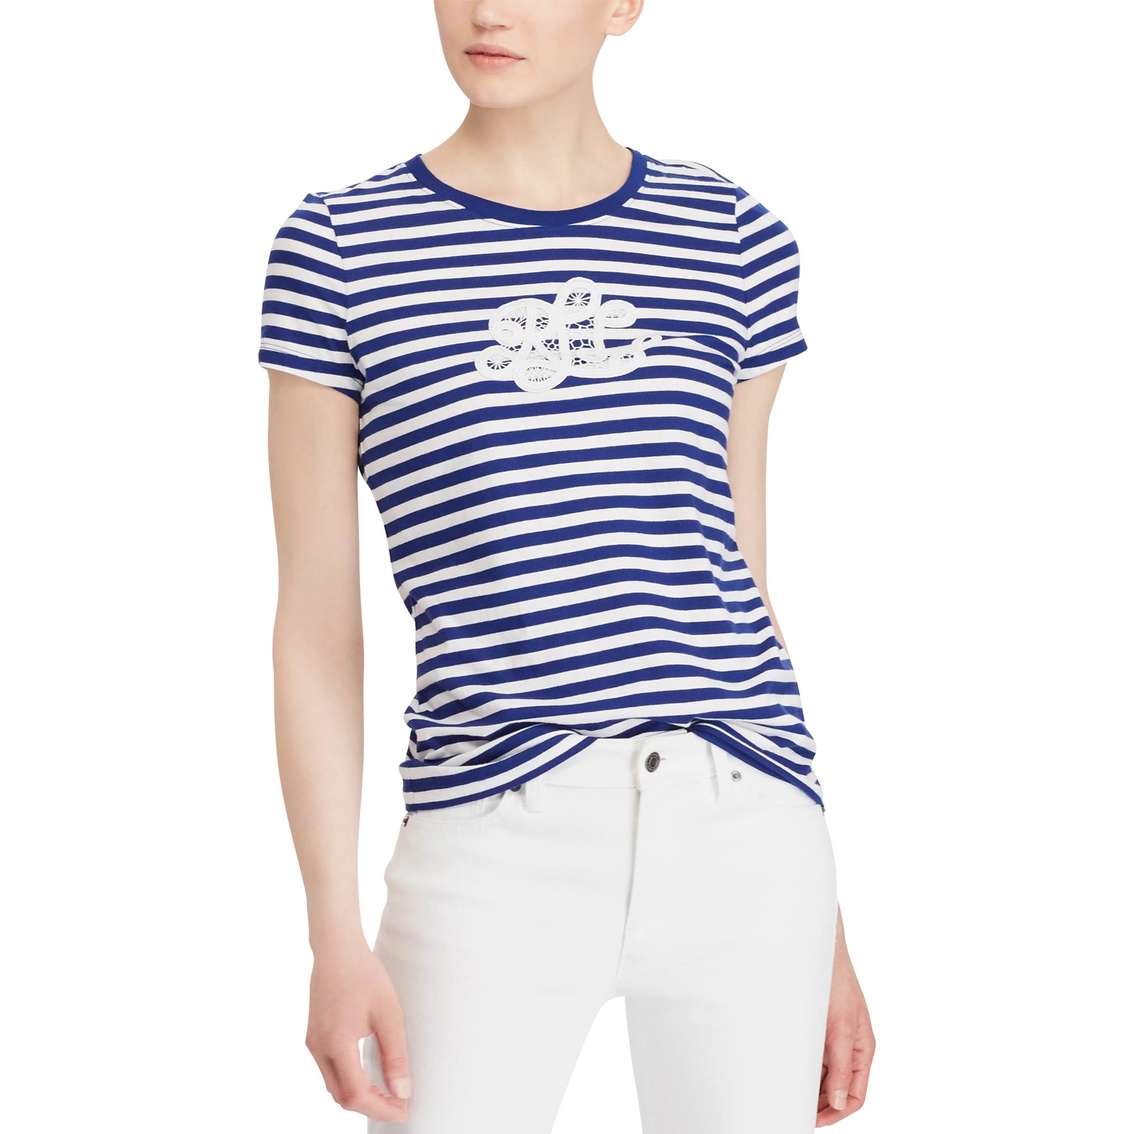 Lauren Ralph Lauren Monogram Striped Tee | Tops | Clothing ...